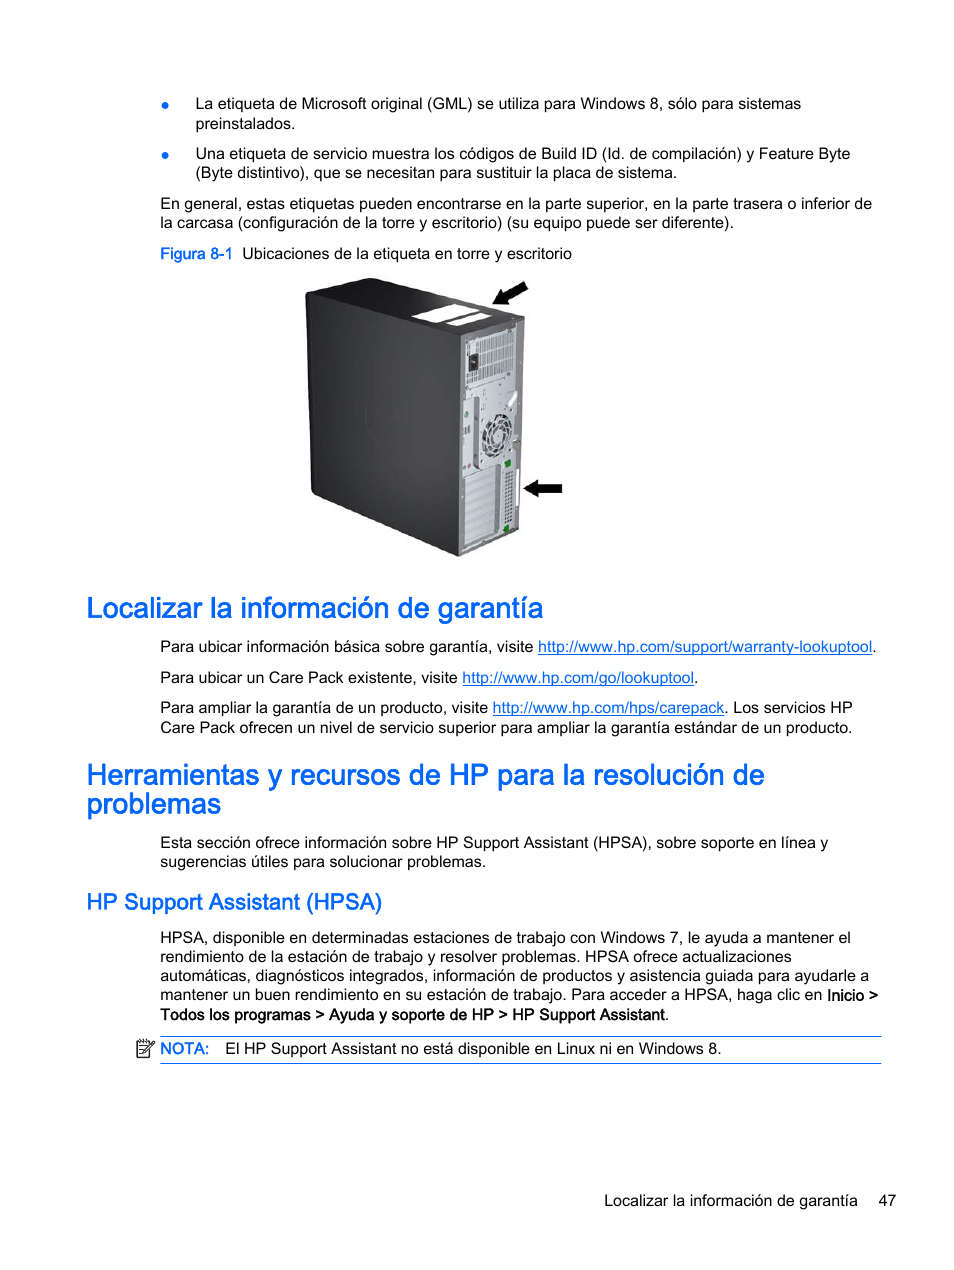 Localizar la información de garantía, Hp support assistant (hpsa) | HP Estación de trabajo HP Z820 Manual del usuario | Página 55 / 61